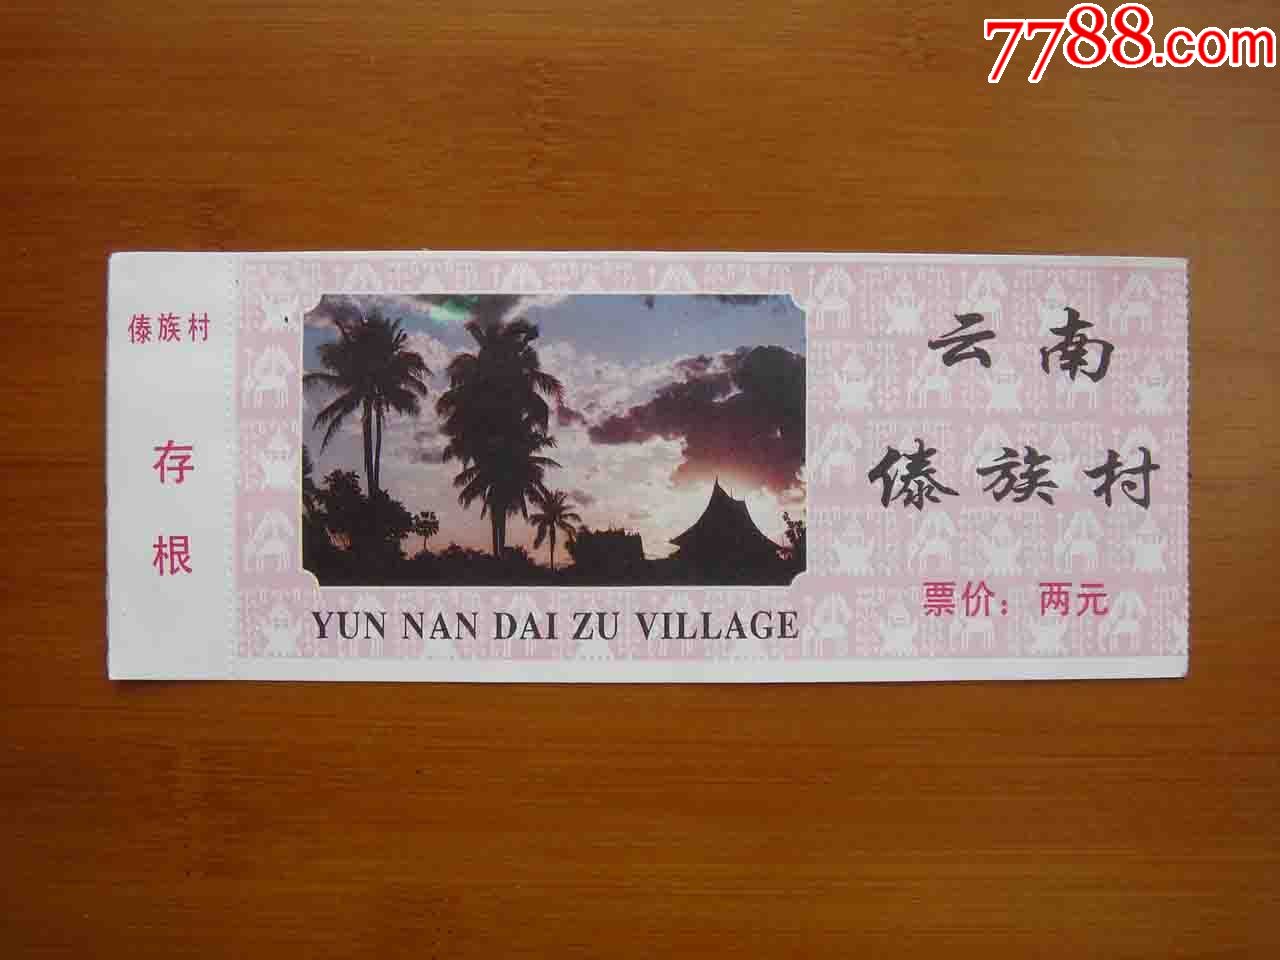 门票云南民族村傣族村游览券品相如图按图发货002